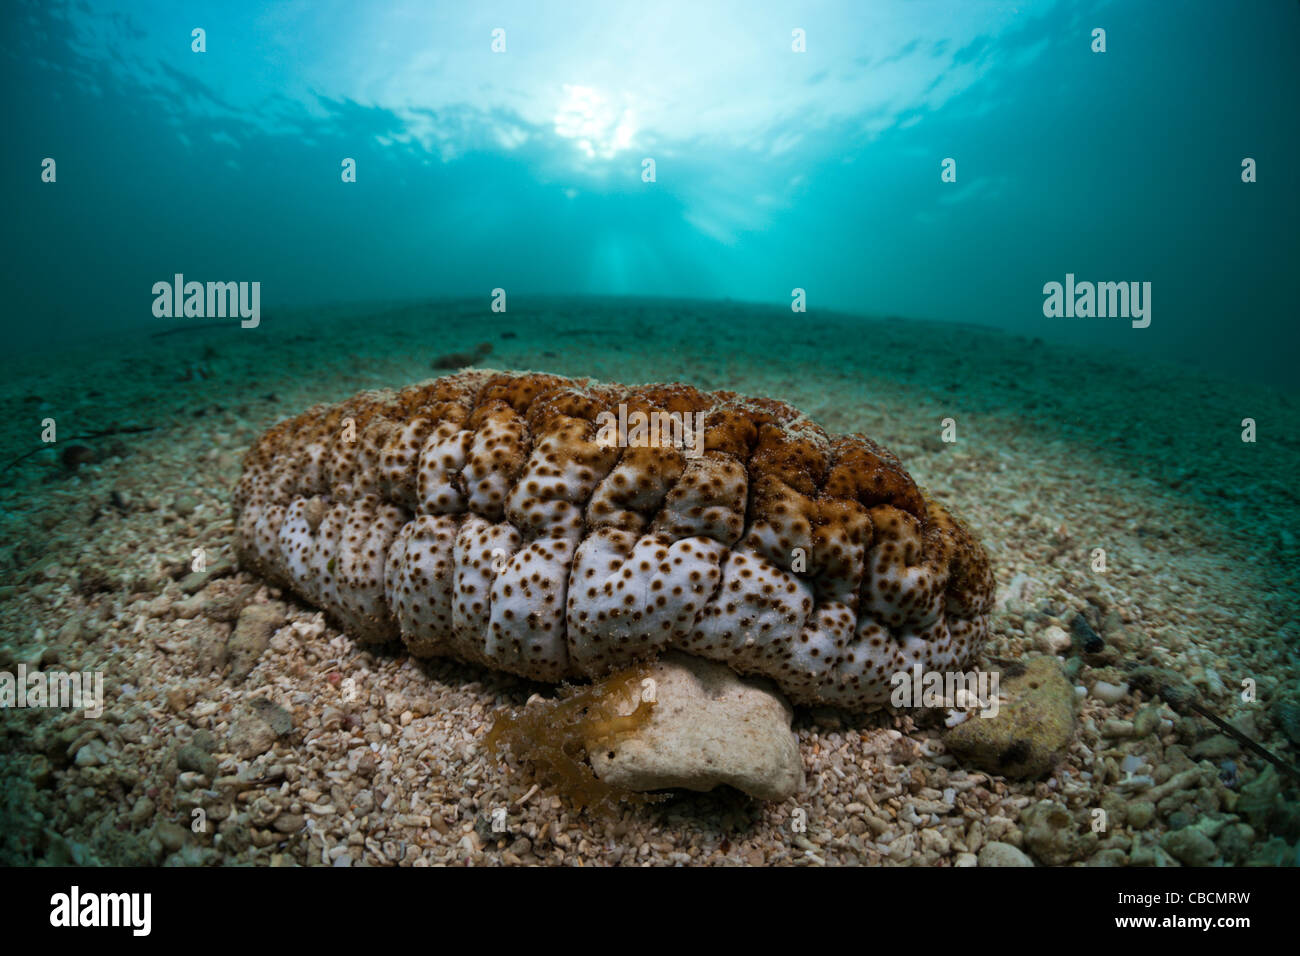 Sea Cucumber on Sand, Holothuroidea, Cenderawasih Bay, West Papua, Indonesia Stock Photo